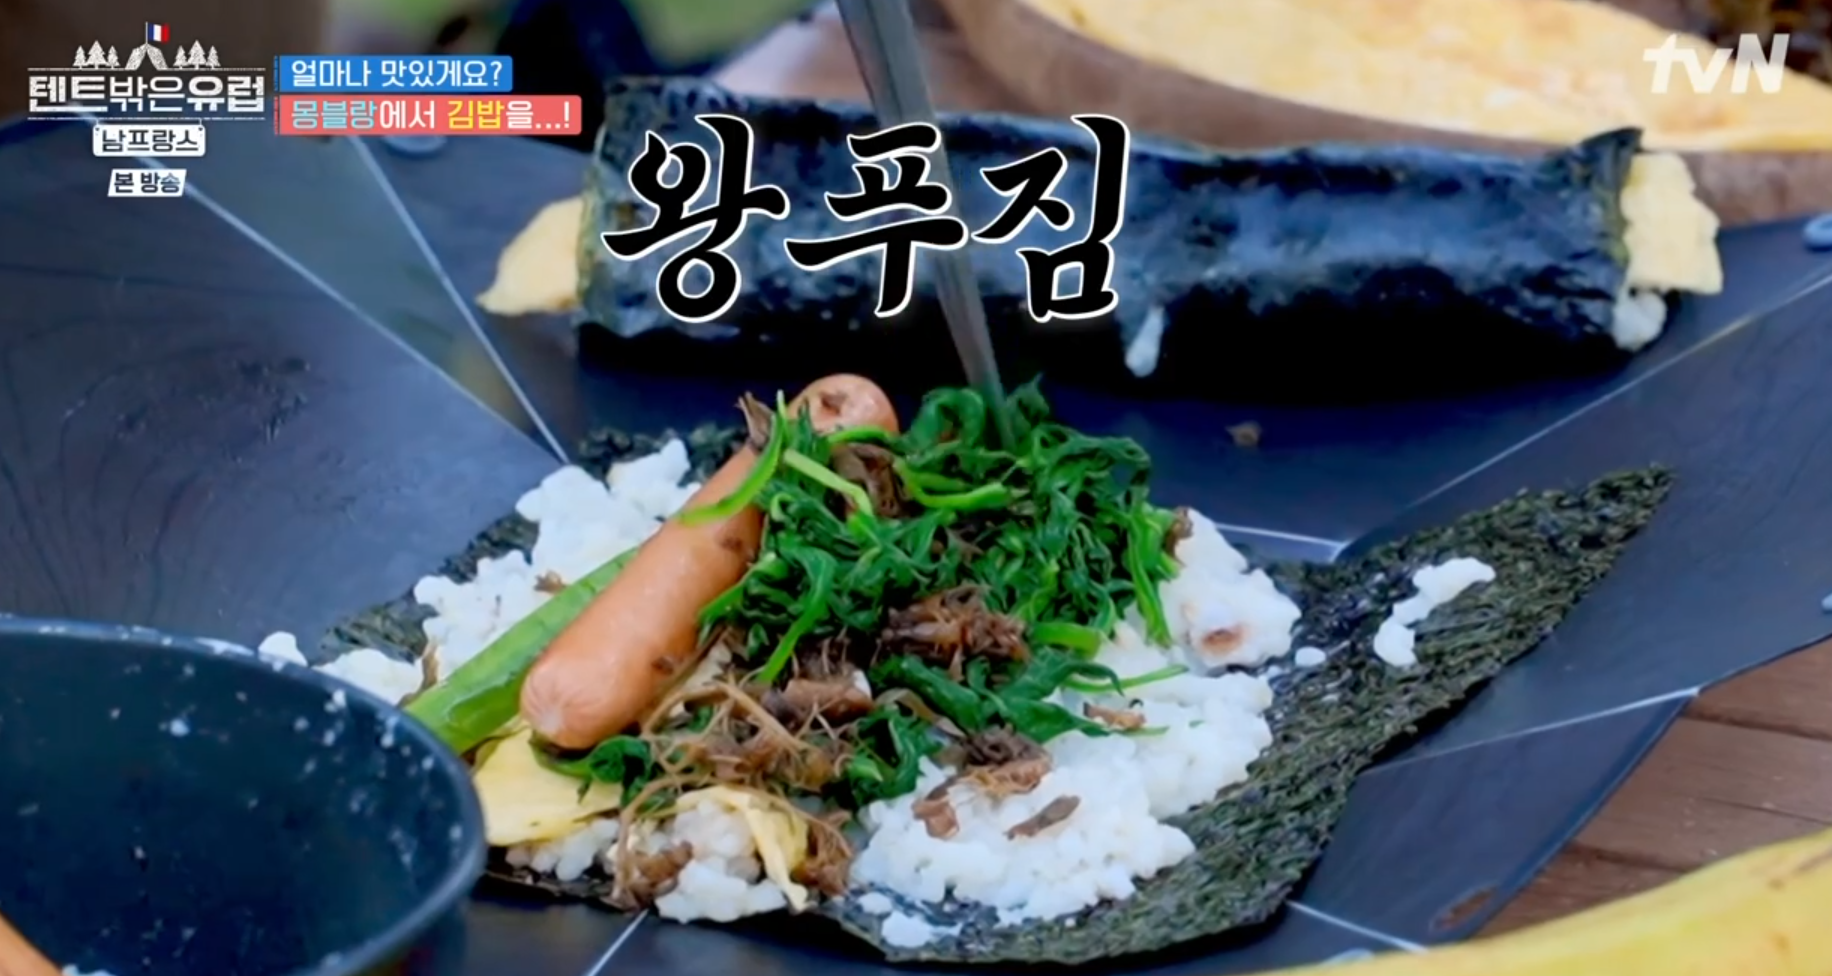 텐트밖은유럽/남프랑스 5화, 몽블랑 쉼터에서 먹을 김밥